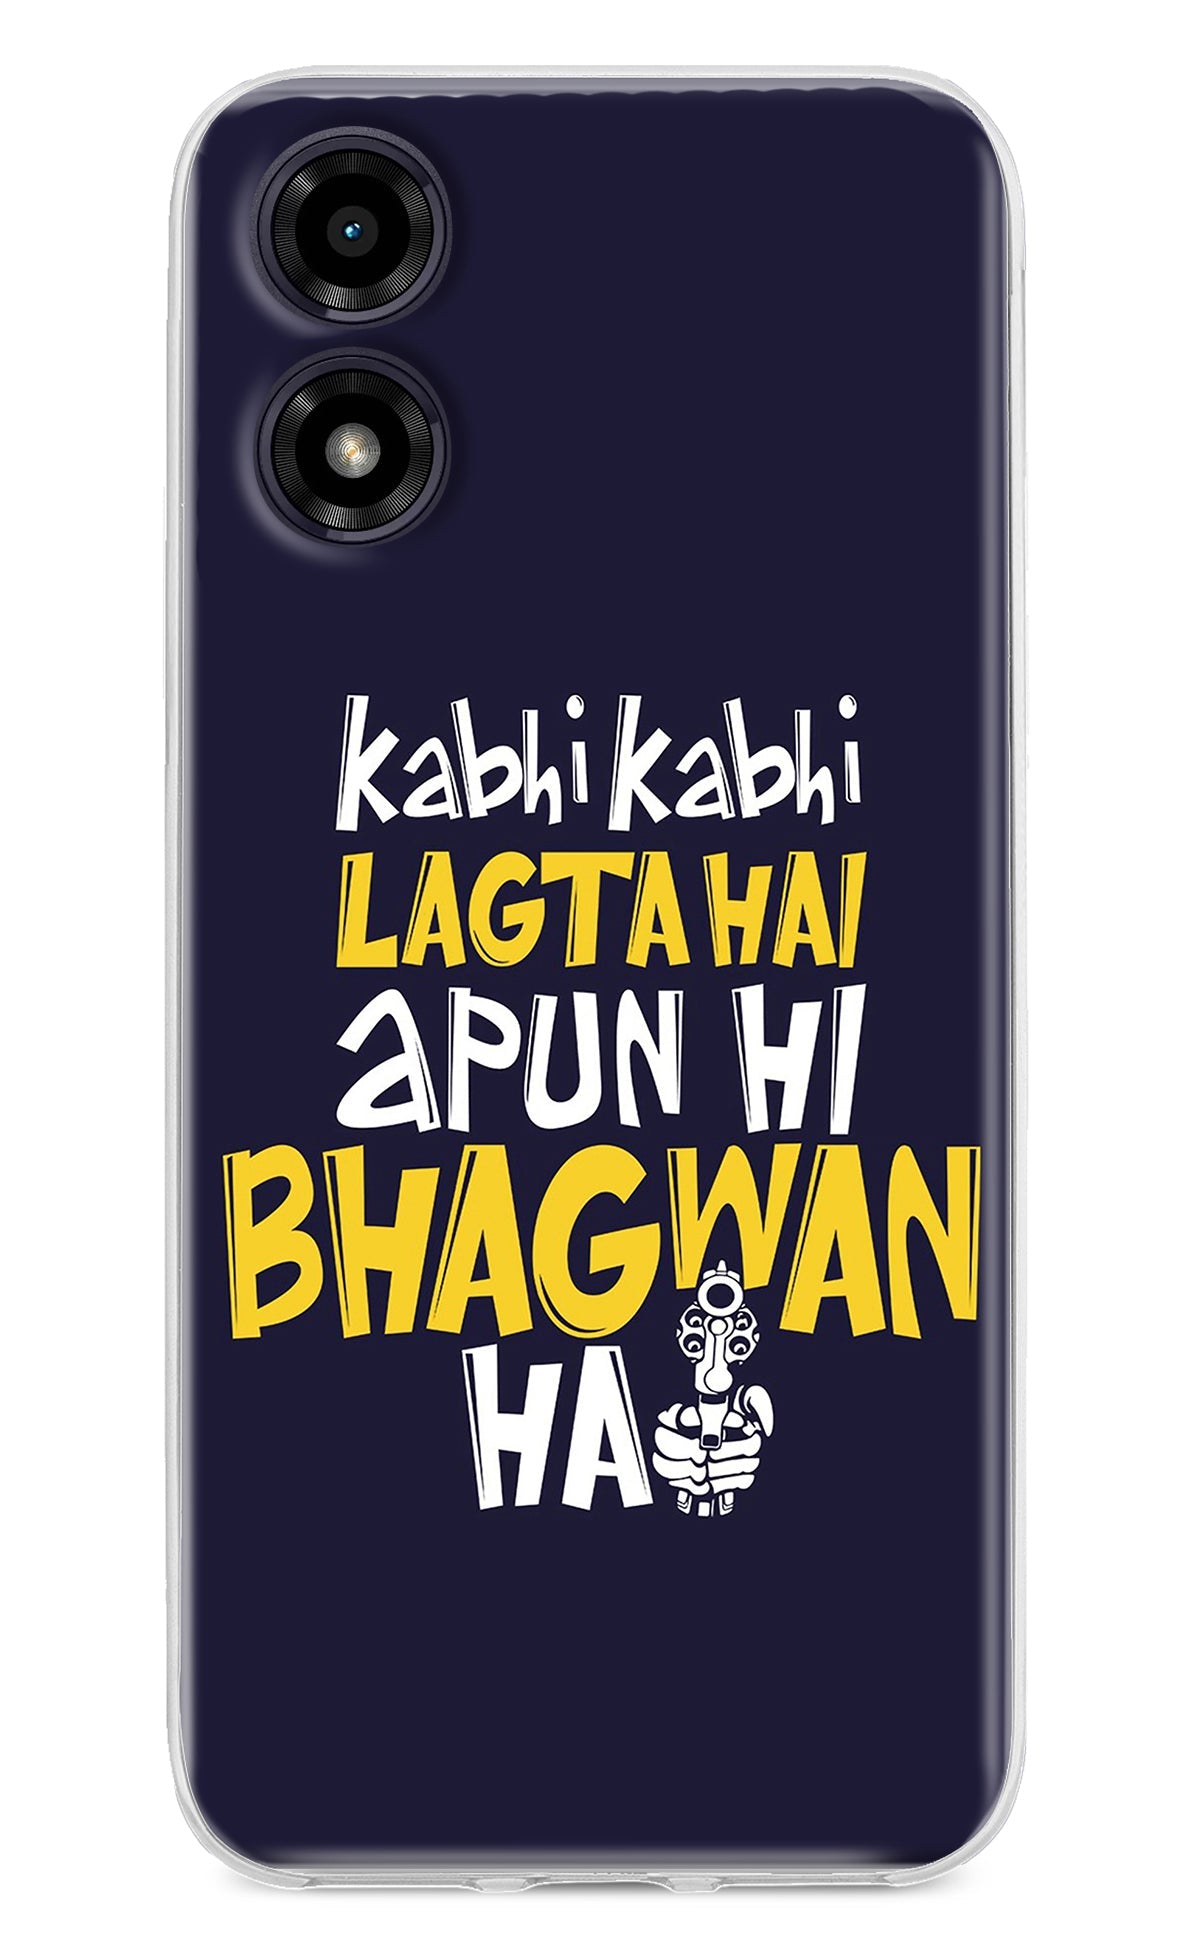 Kabhi Kabhi Lagta Hai Apun Hi Bhagwan Hai Moto G04 Back Cover